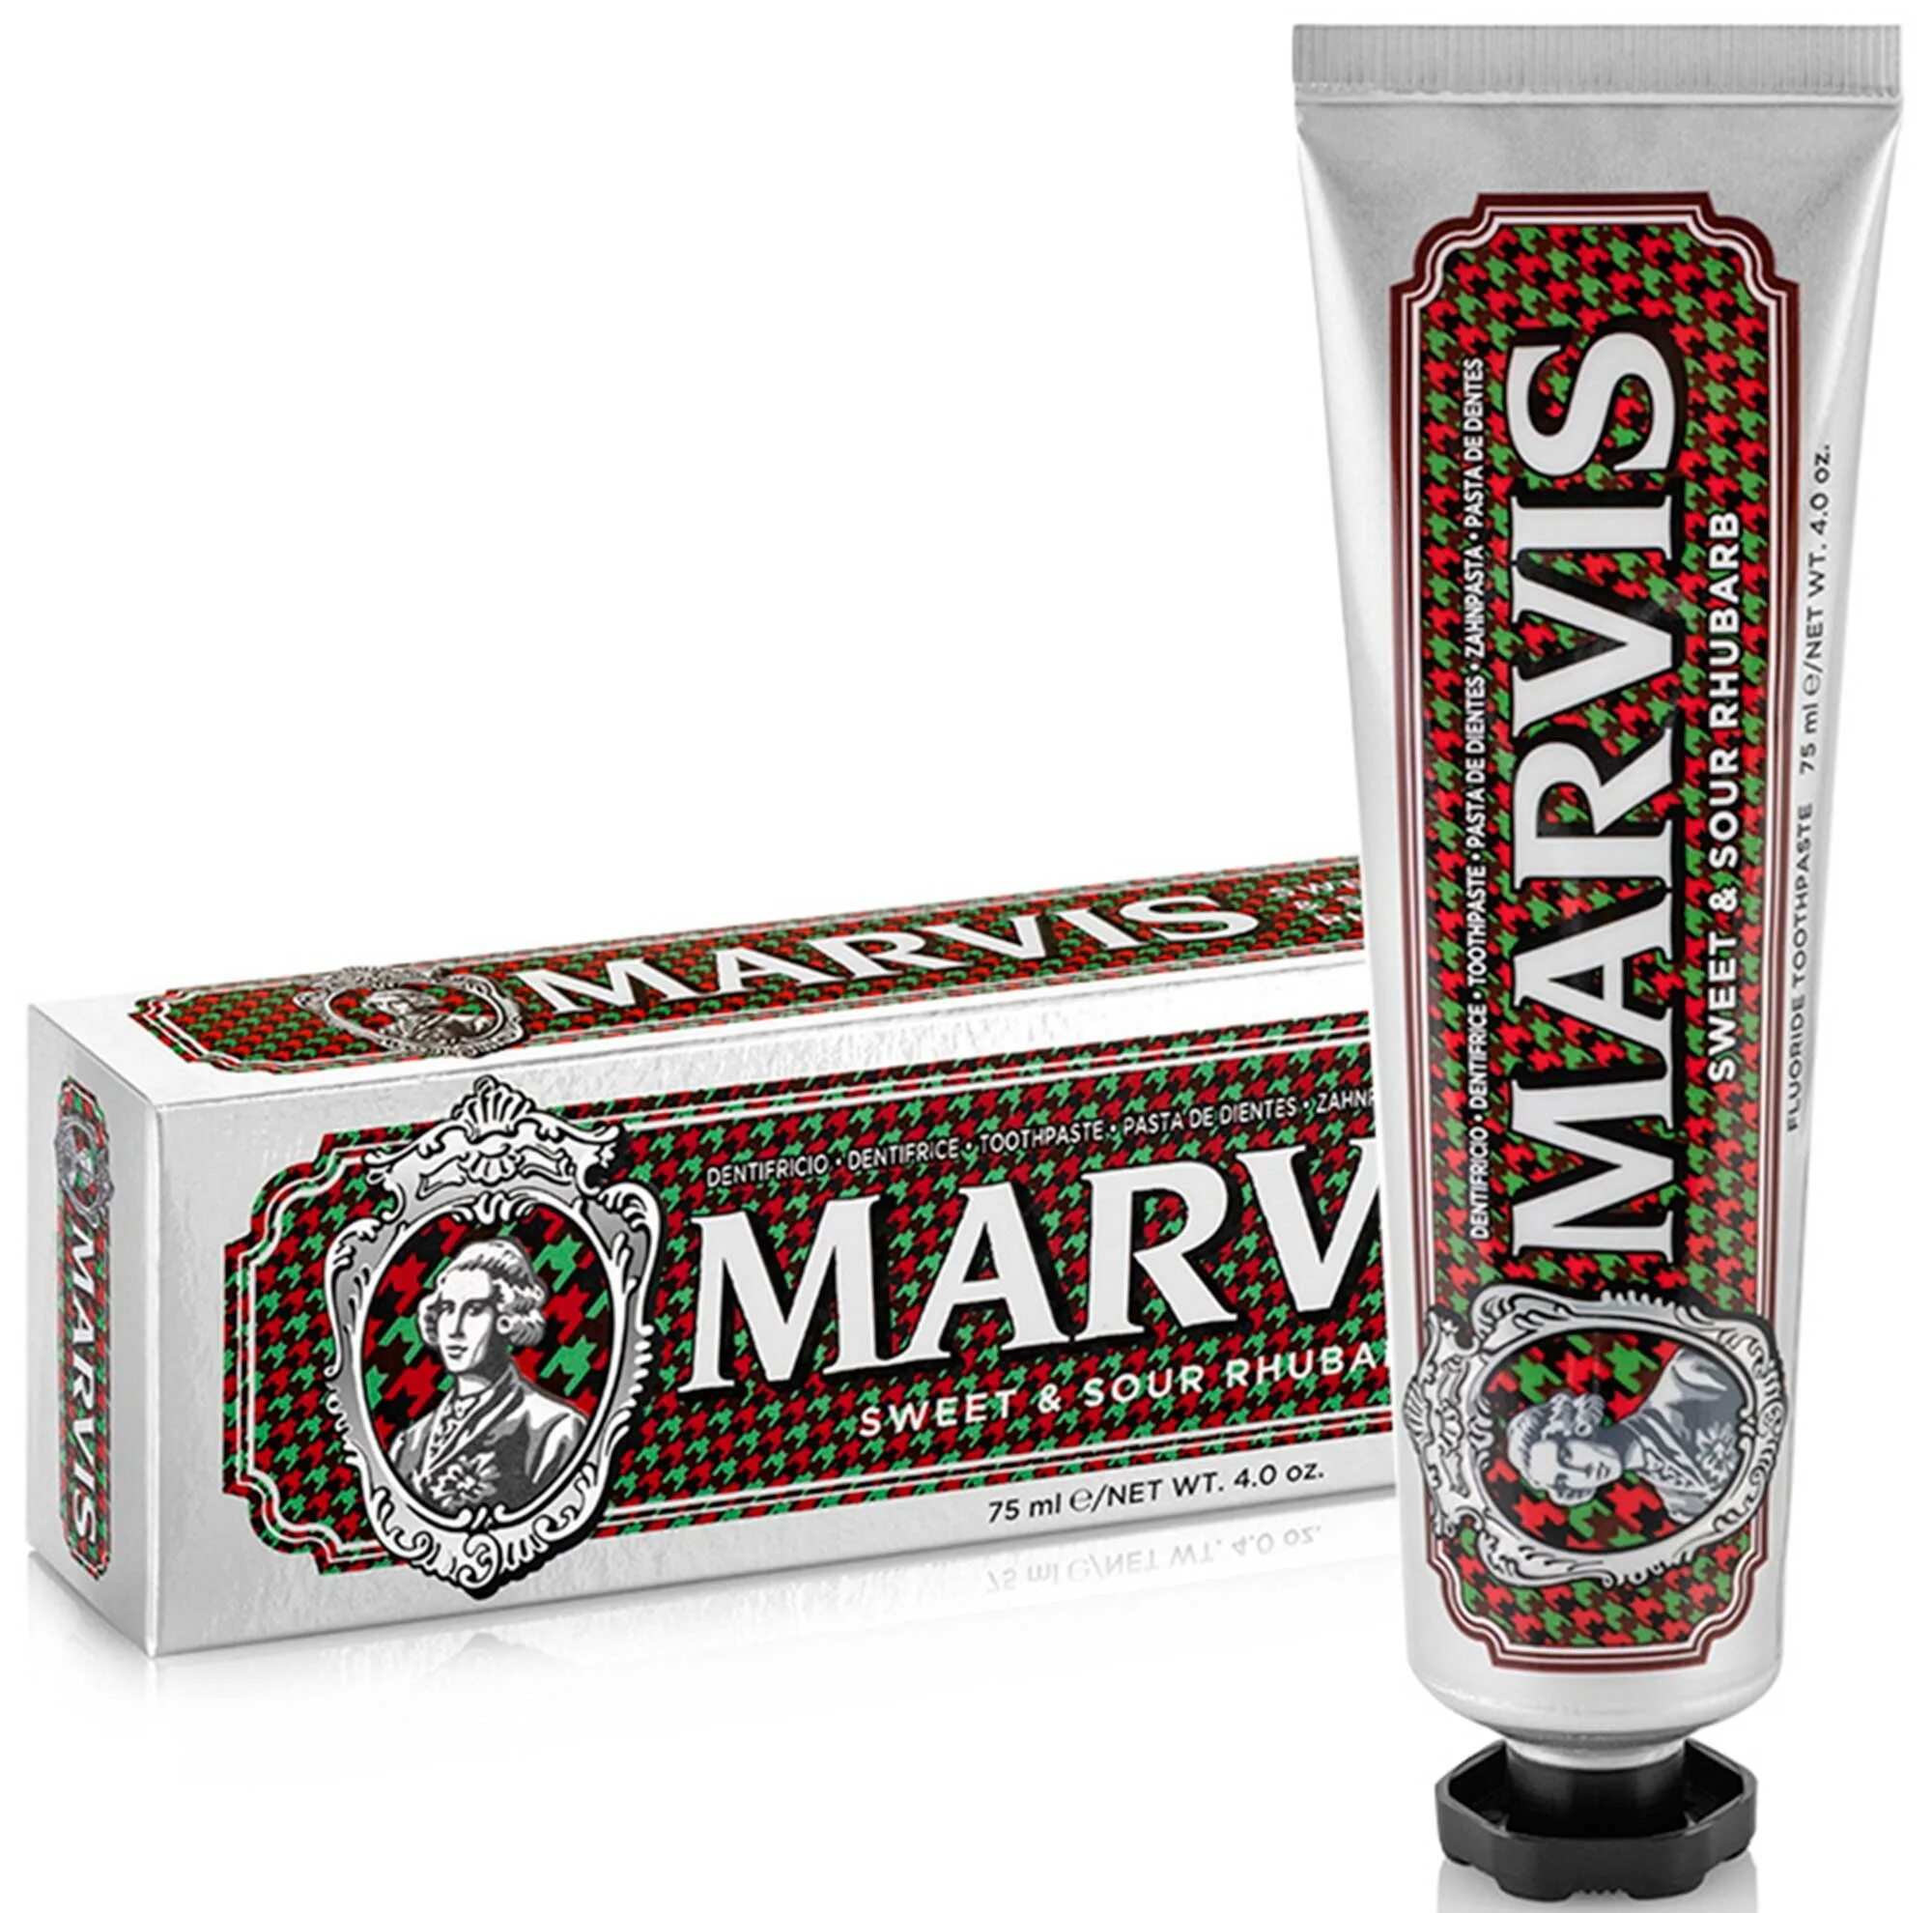 Турецкая зубная паста Marvis. Марвис зубная паста отбеливающая. Марвис сладкая паста. Марвис Blossom Tea. Кис паста